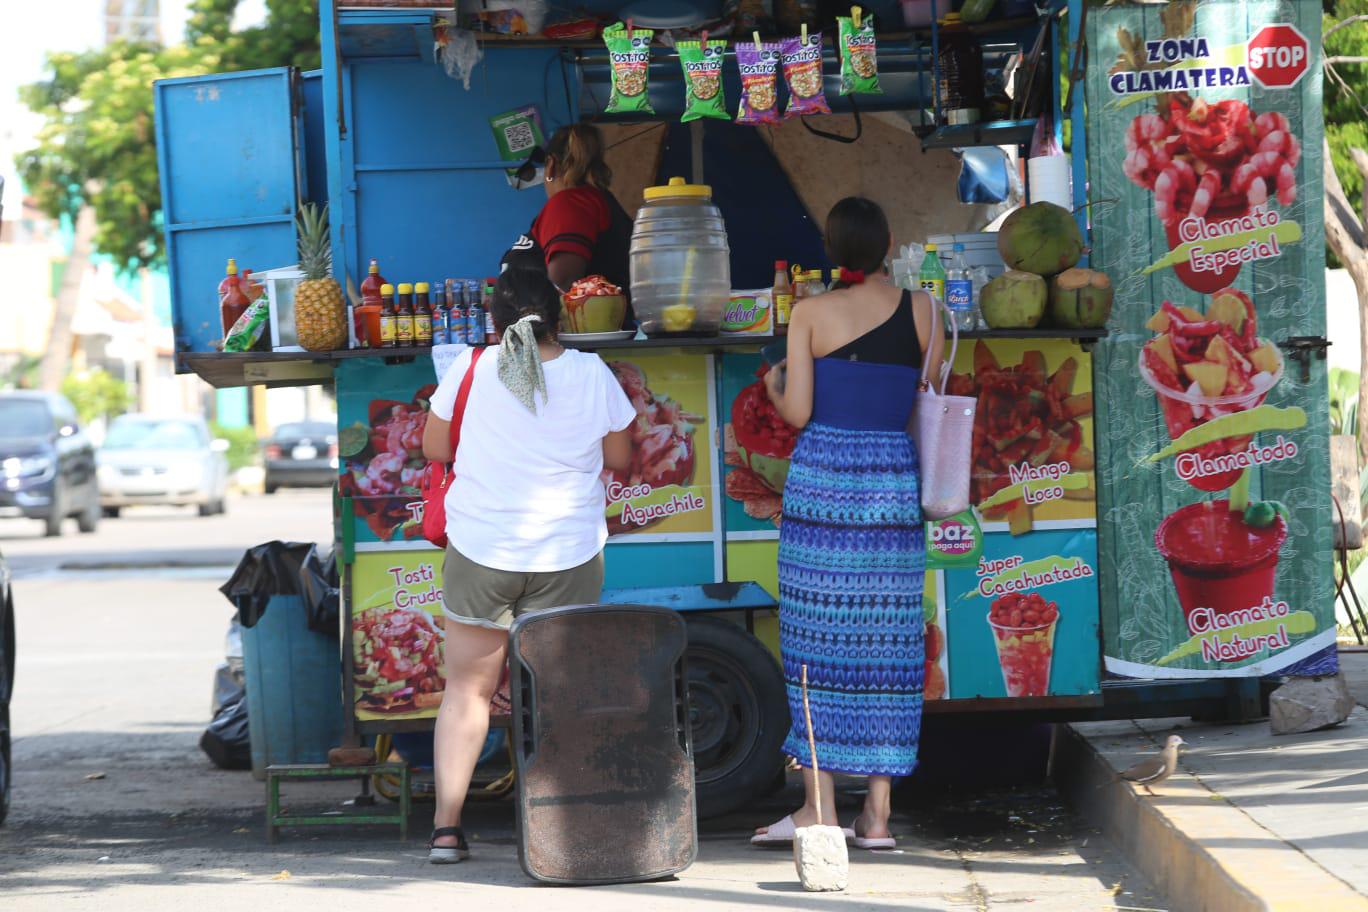 $!Tras el fuerte calor en Mazatlán las personas buscan agua o cocos helados.